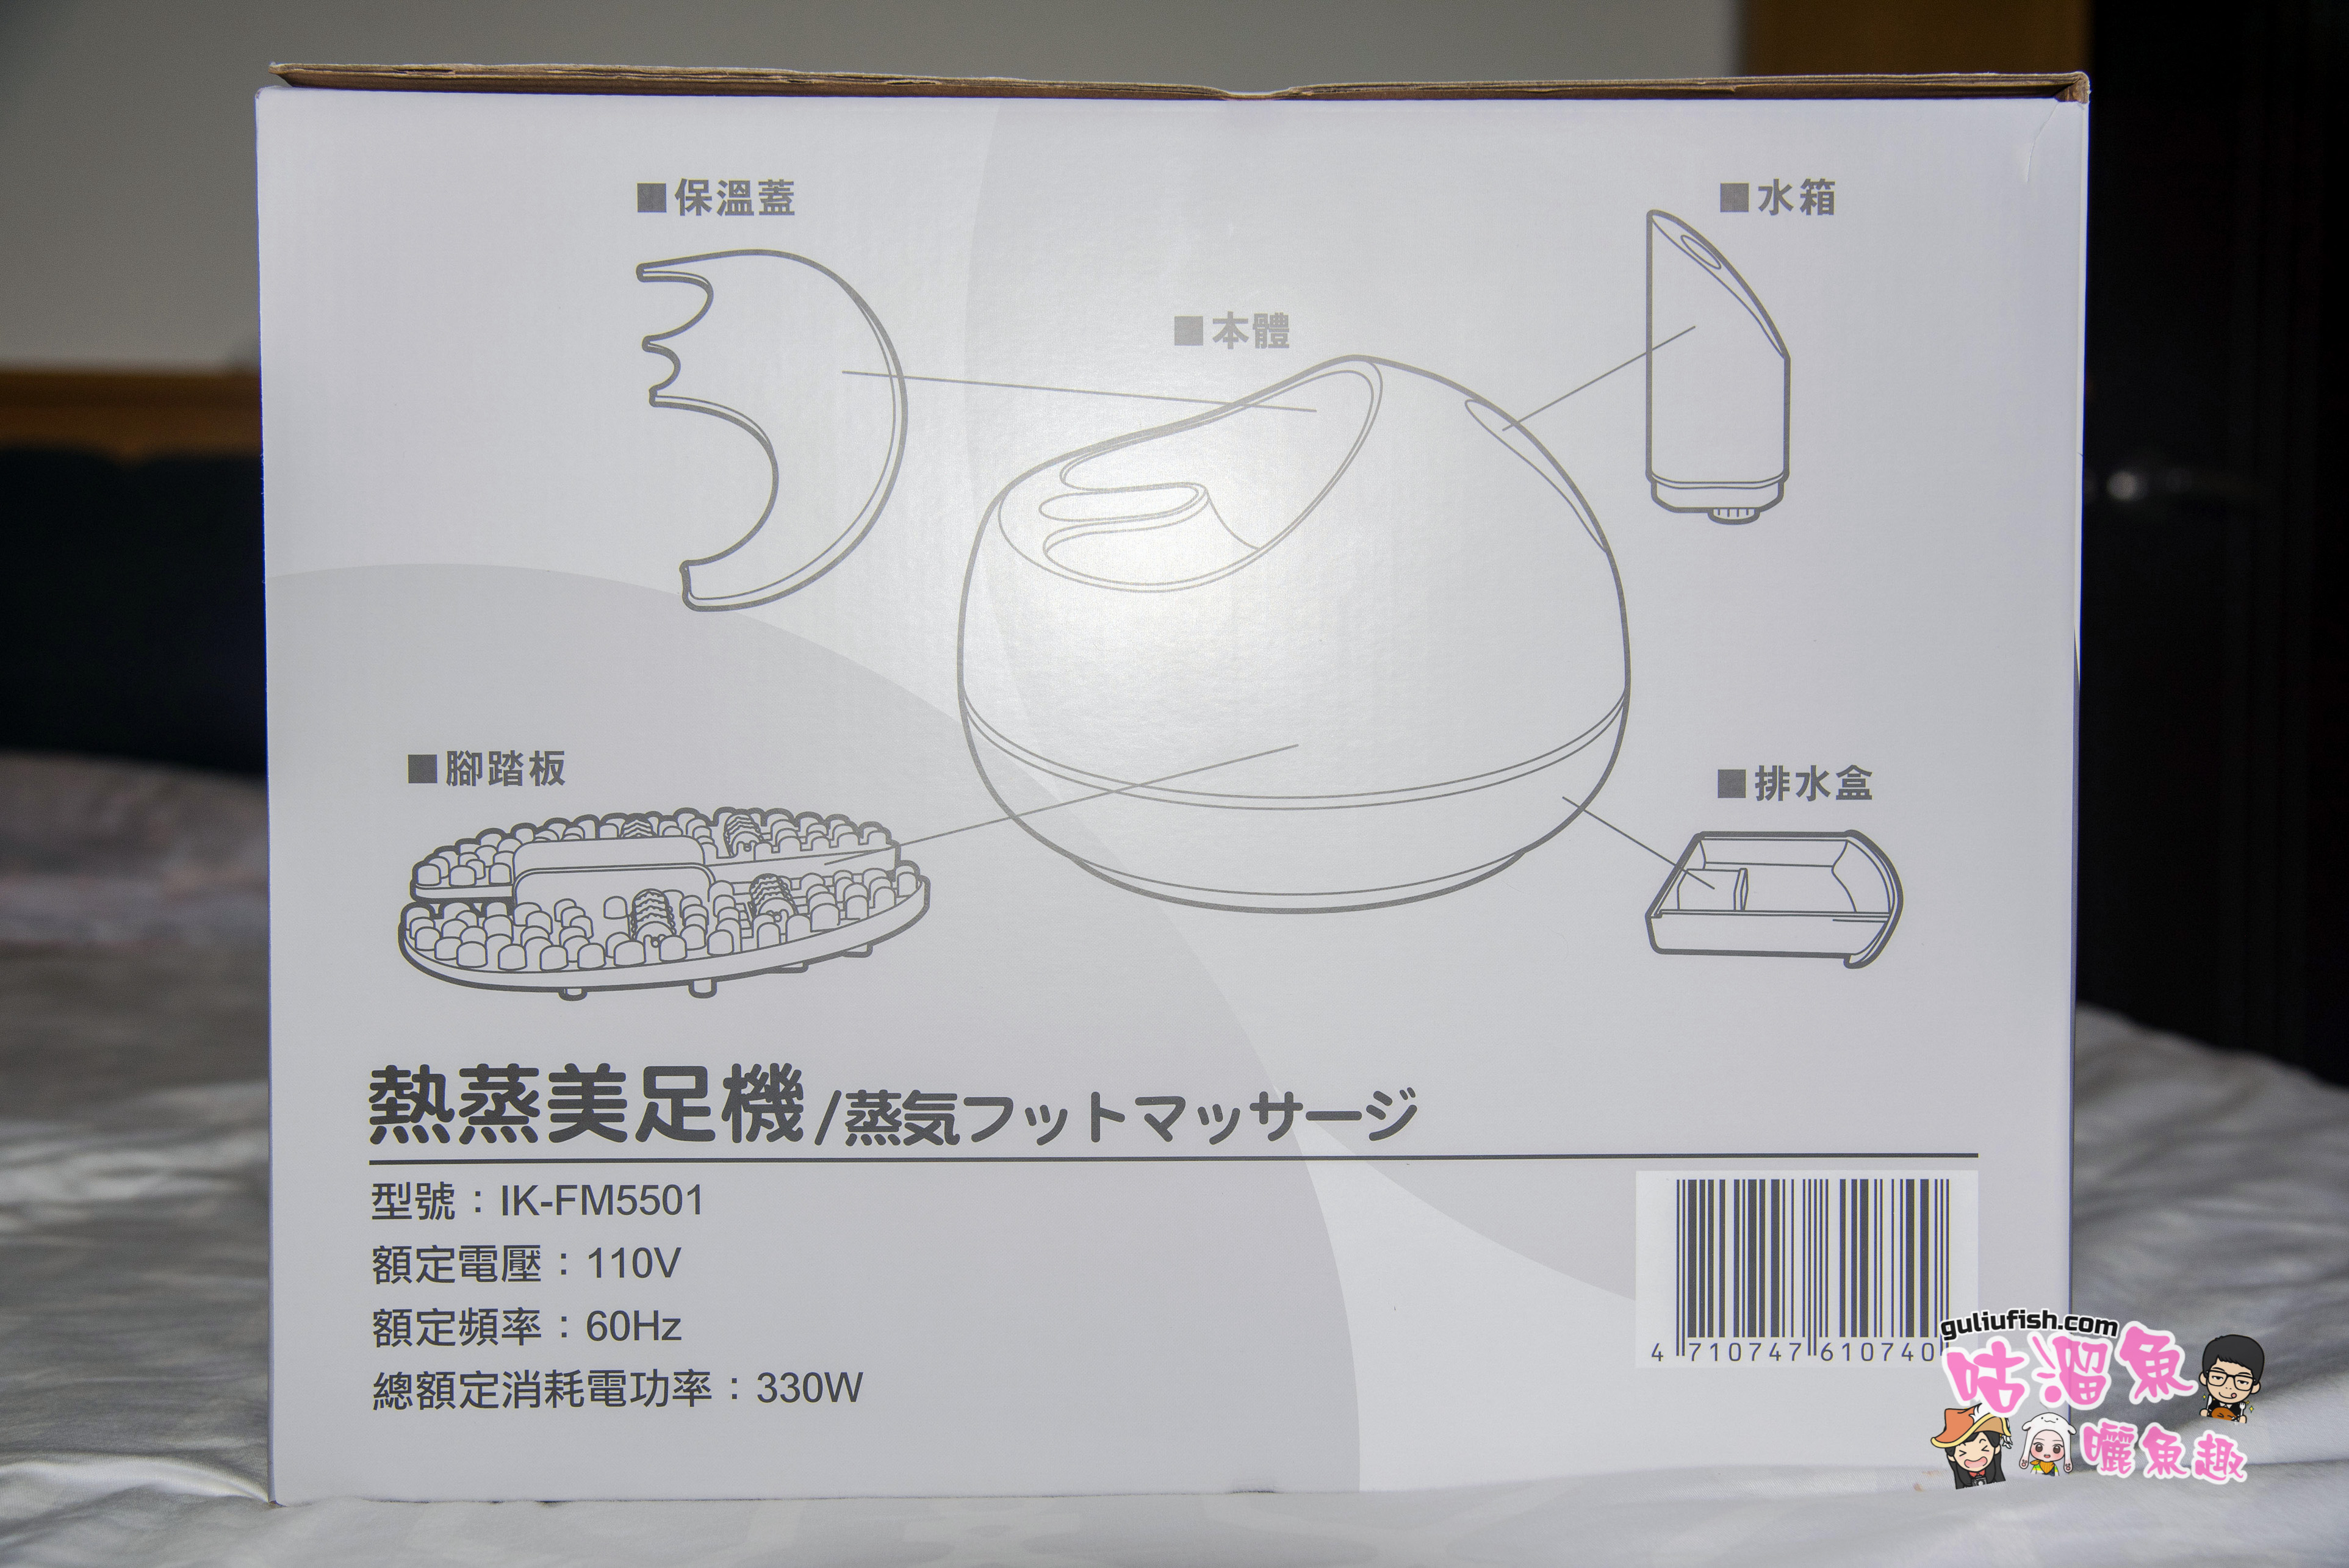 家電好物推薦》在家放鬆享用「Ikiiki伊崎 熱蒸美足機」也能讓足部平日好好保養